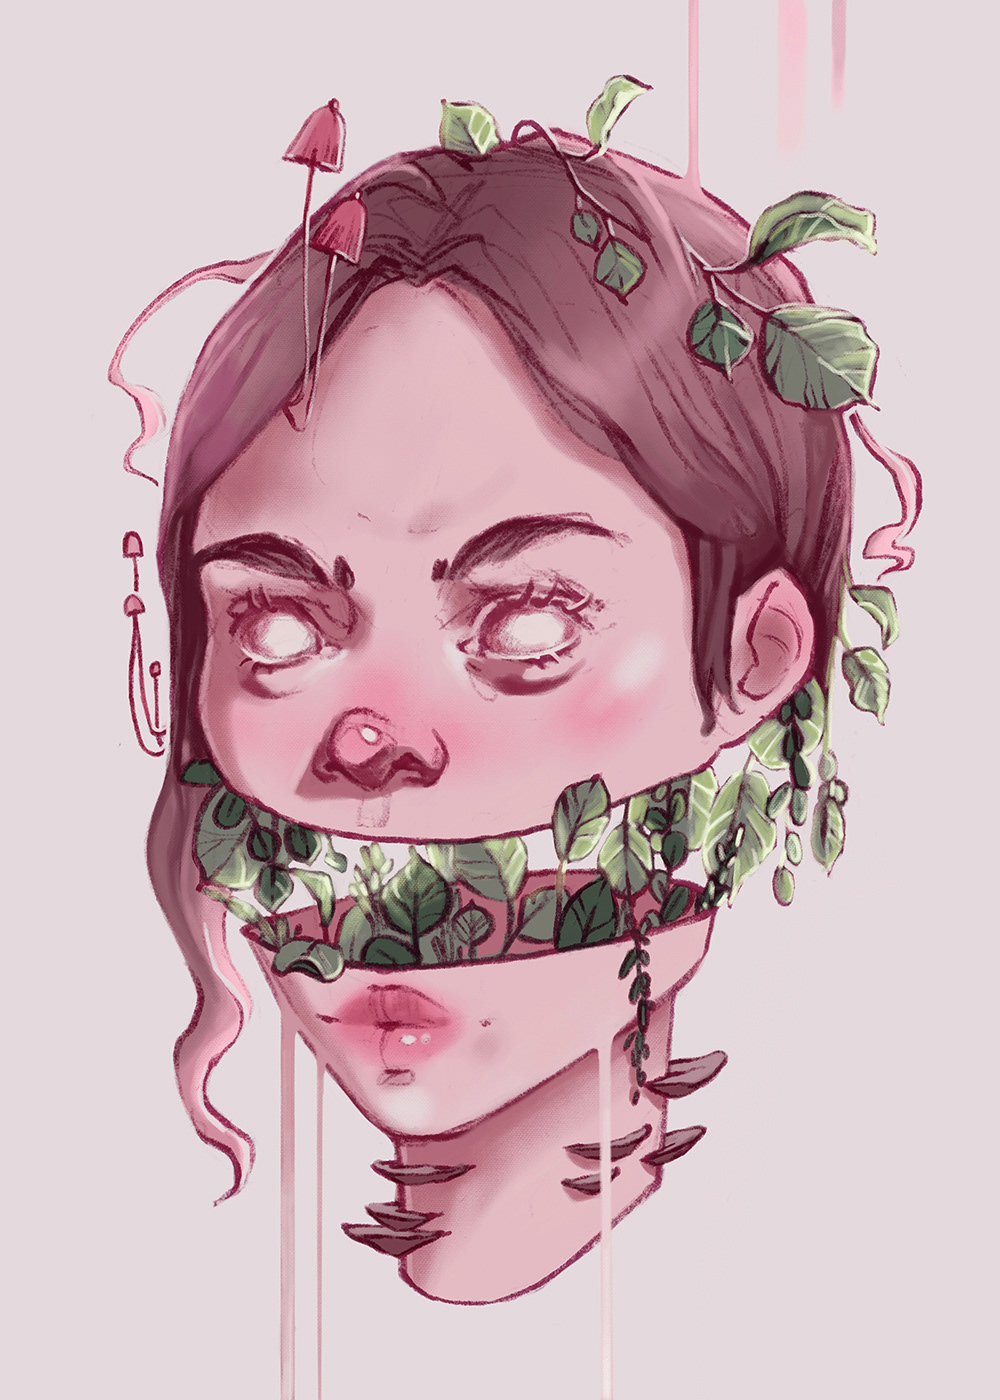 sketch artwork digital illustration Procreate portrait creepy overgrown plants mushroom